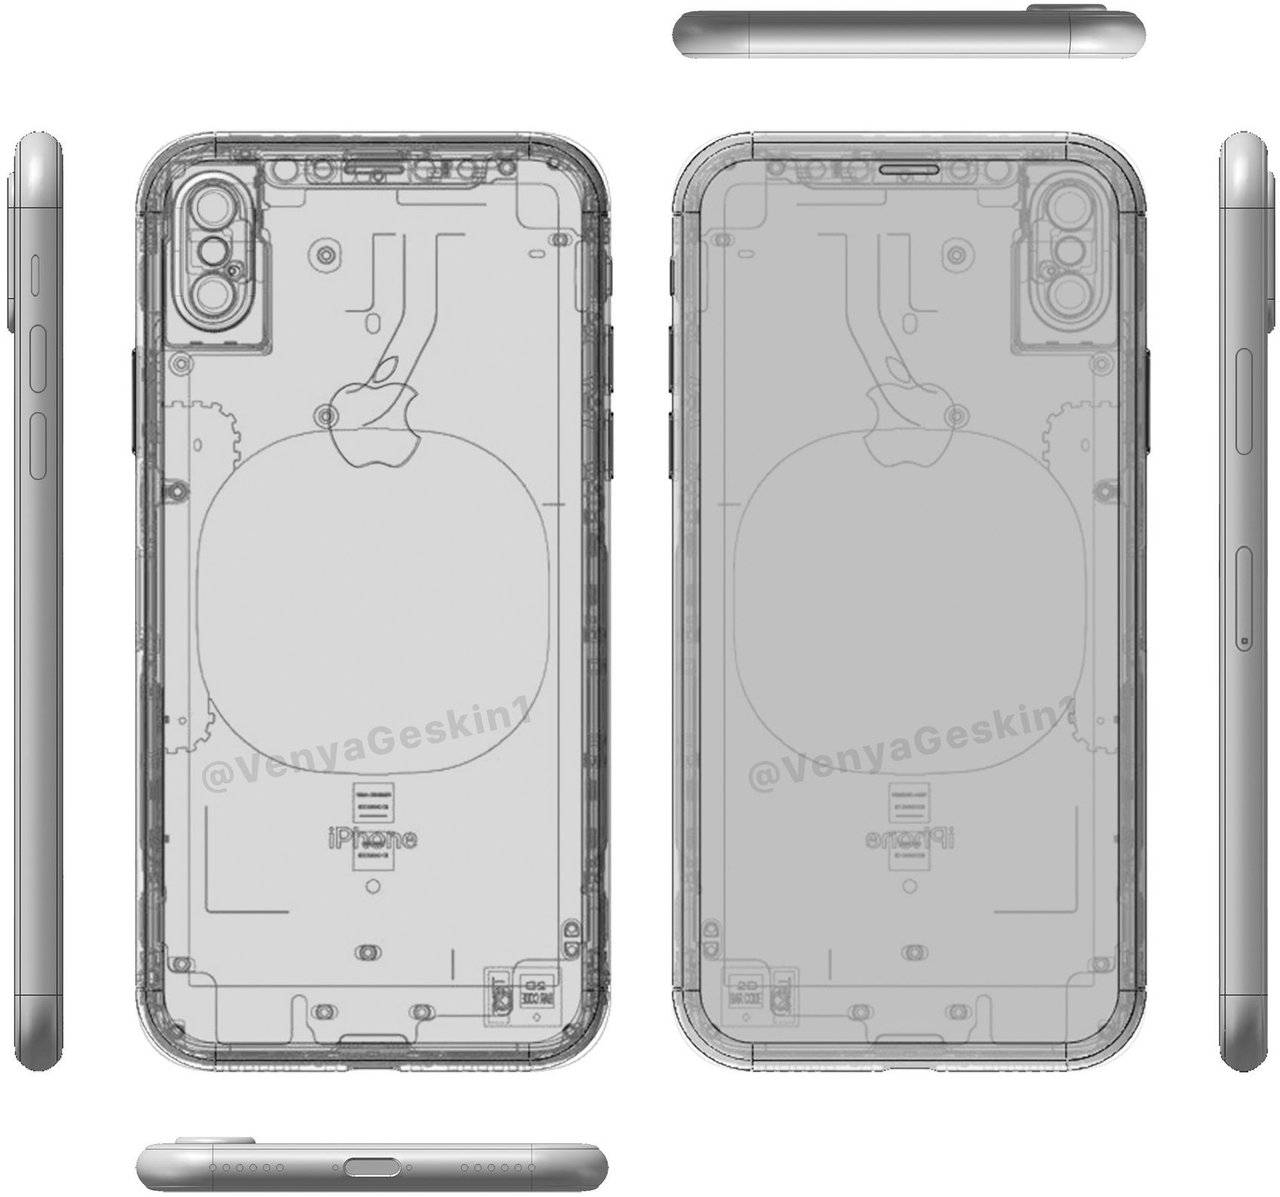 IPhone 8 CAD model schematic wireless charging Benjamin Geskin